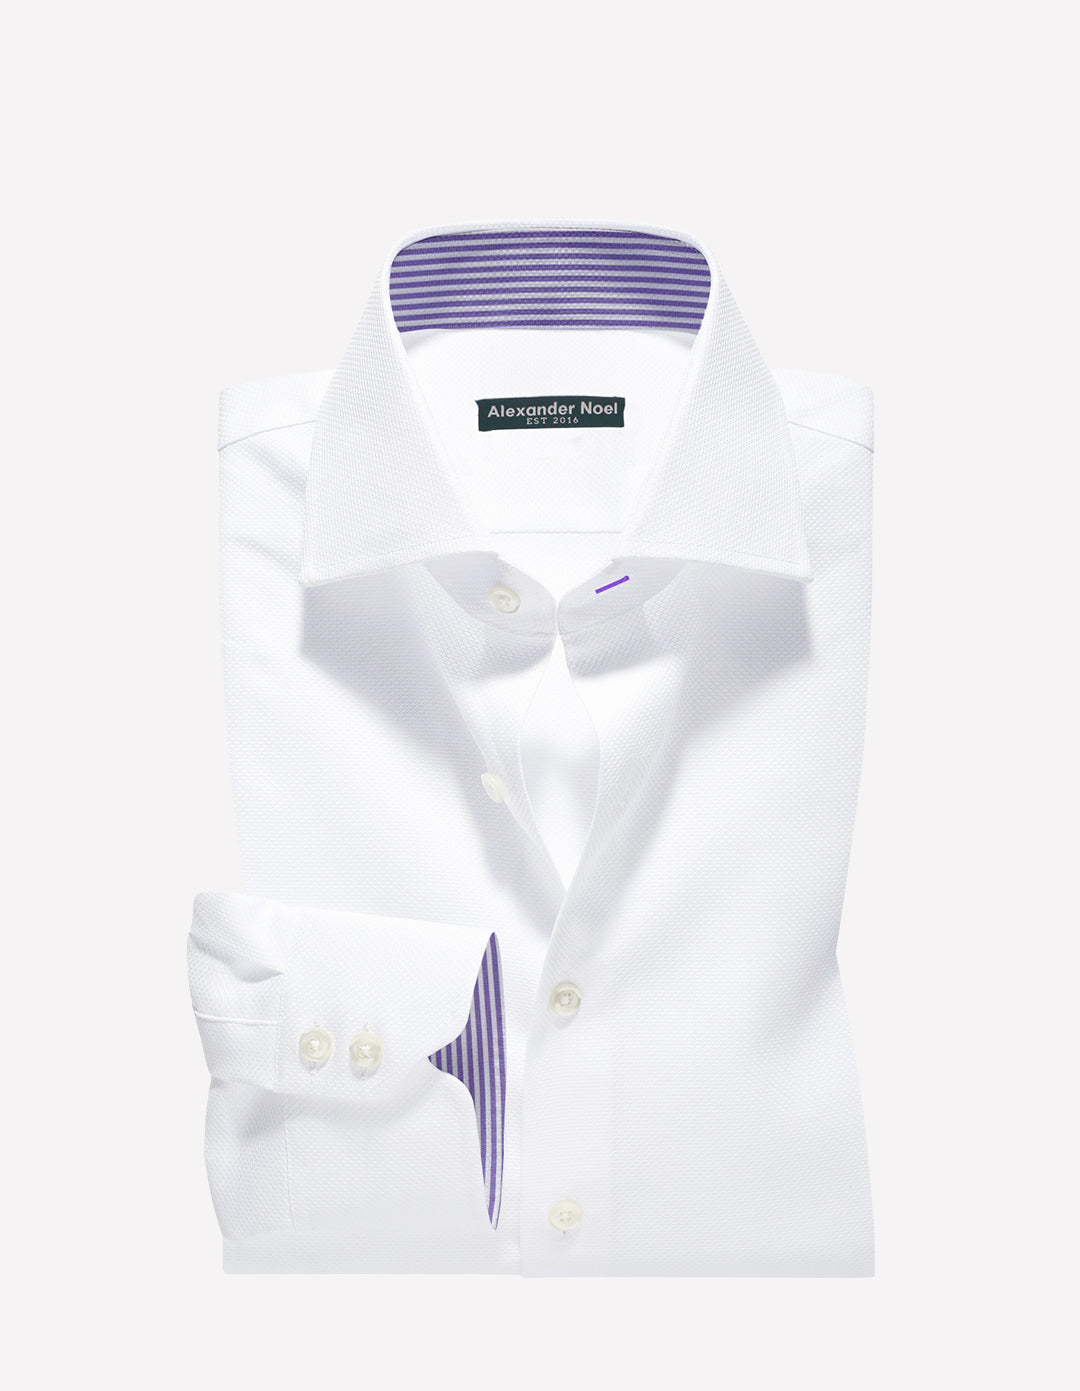 White Royal Oxford dress shirt